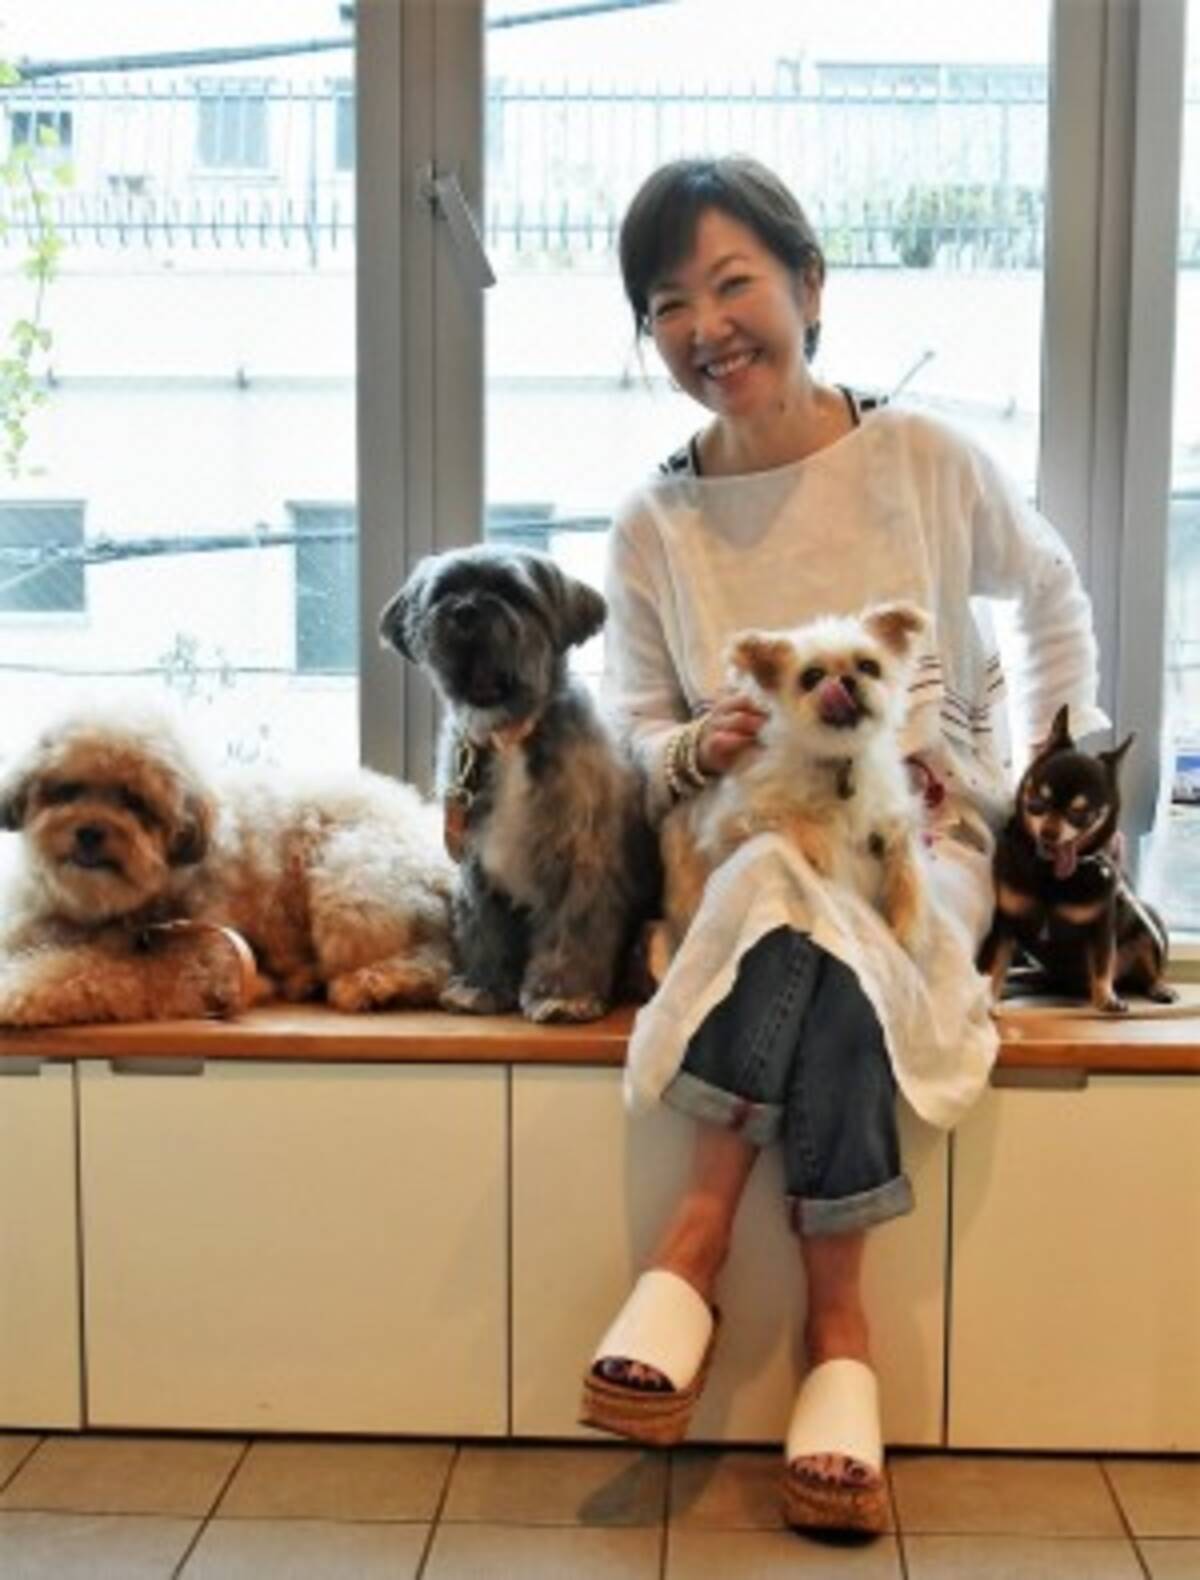 浅田美代子インタビュー 里親になること もっと普通に 4匹と暮らし 保護犬はいいよと伝えたい 19年8月30日 エキサイトニュース